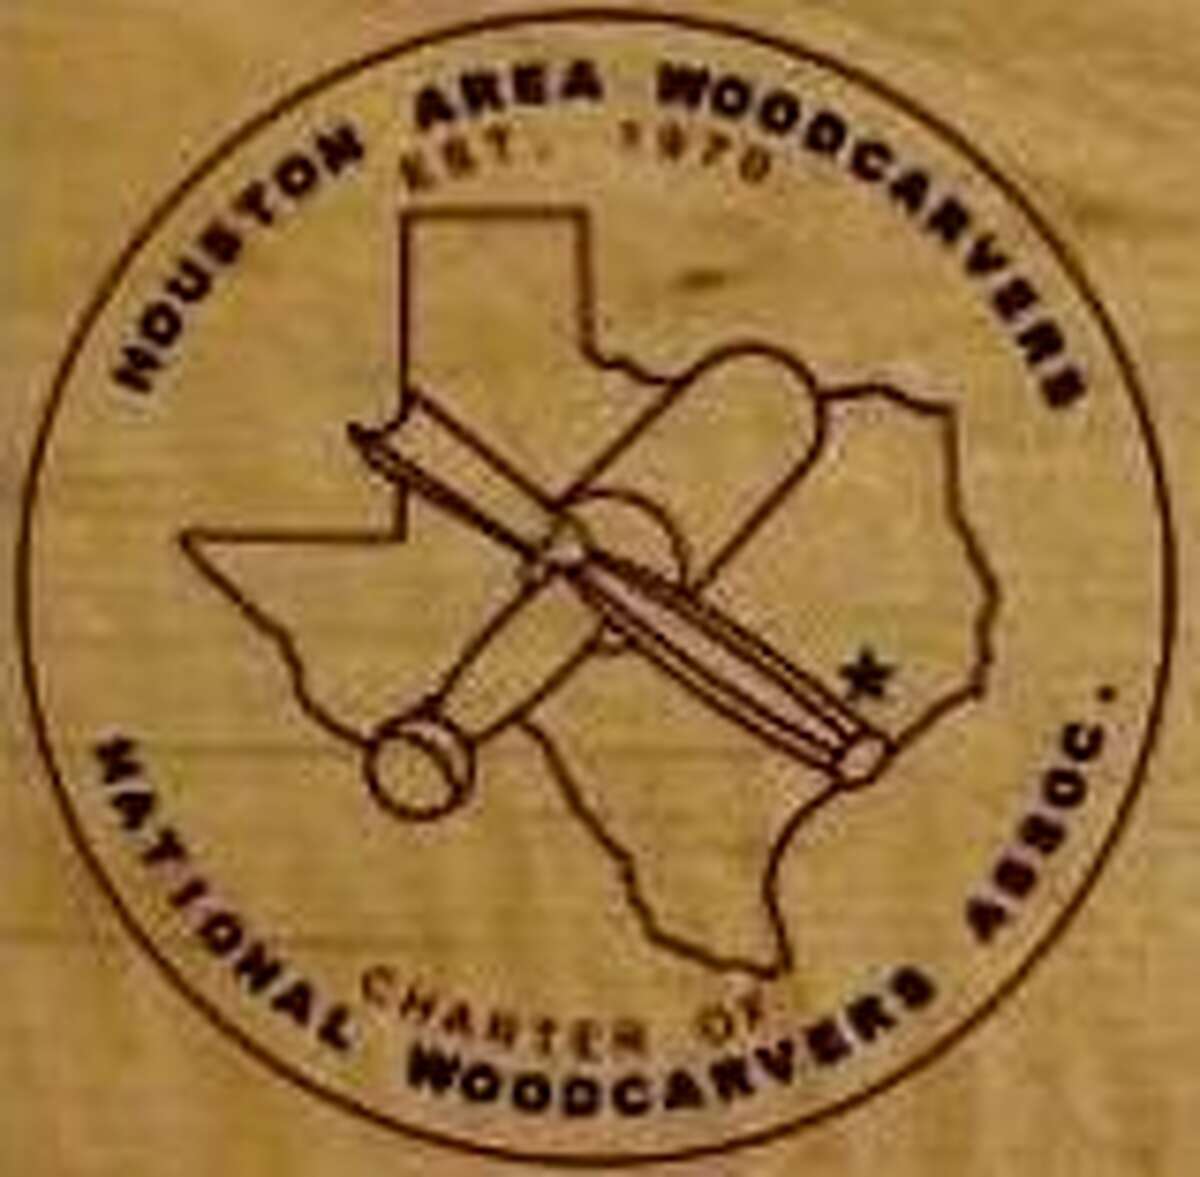 Houston Area Woodcarvers